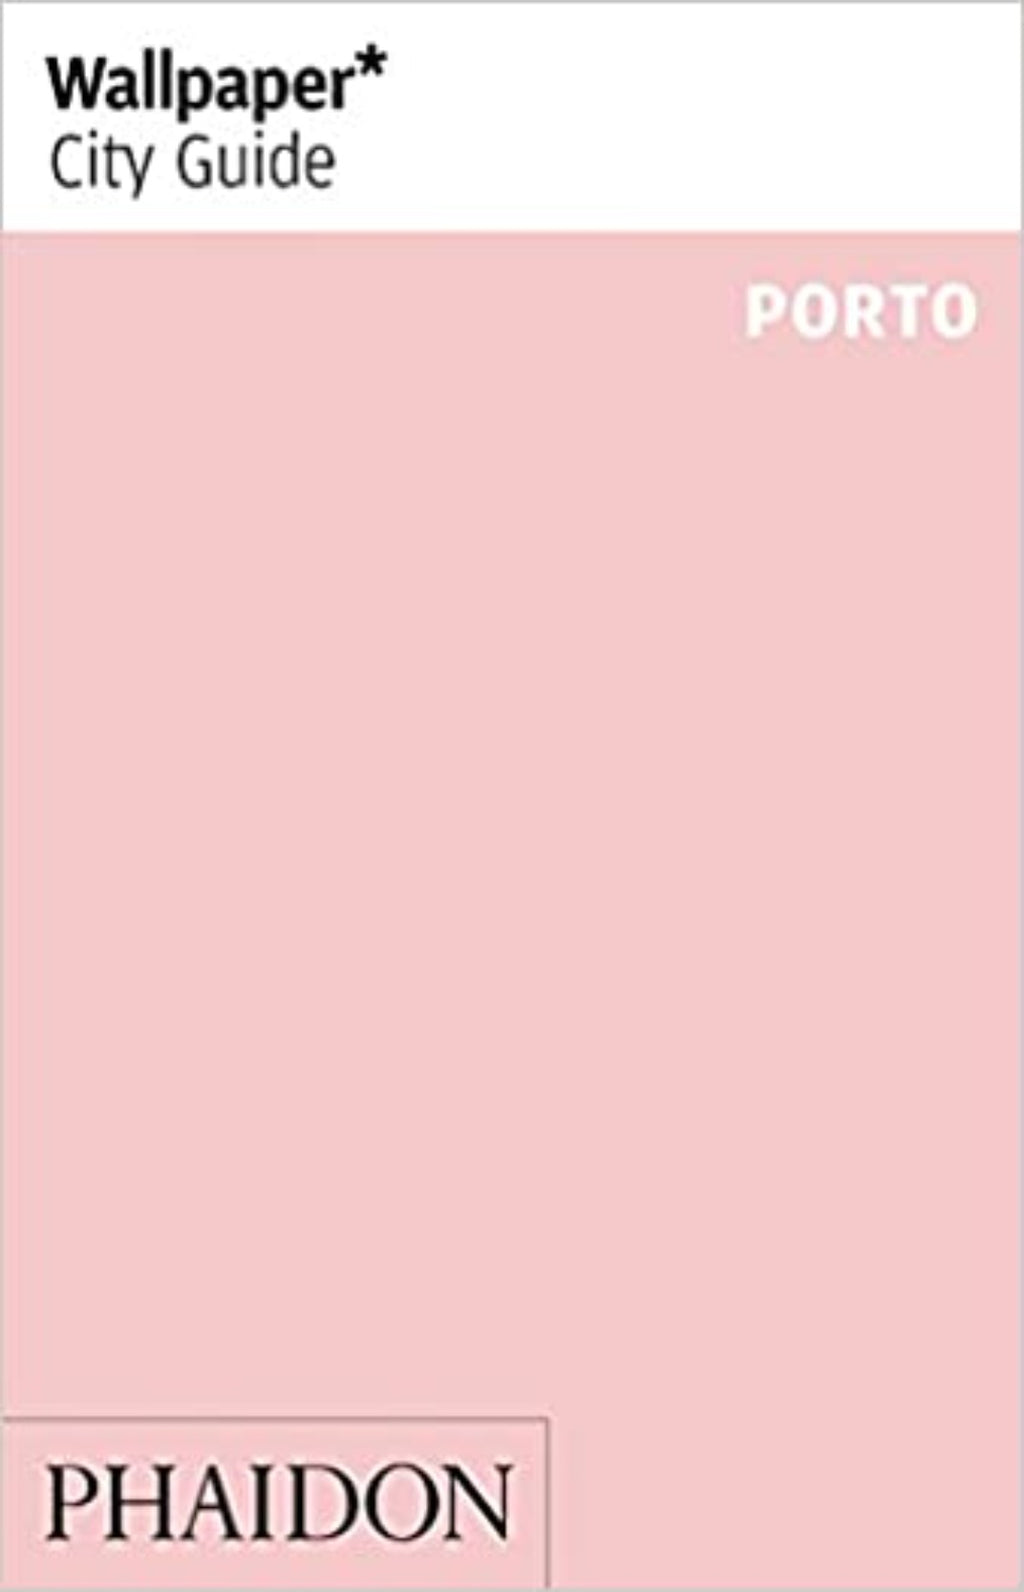 Wallpaper* City Guide - Porto